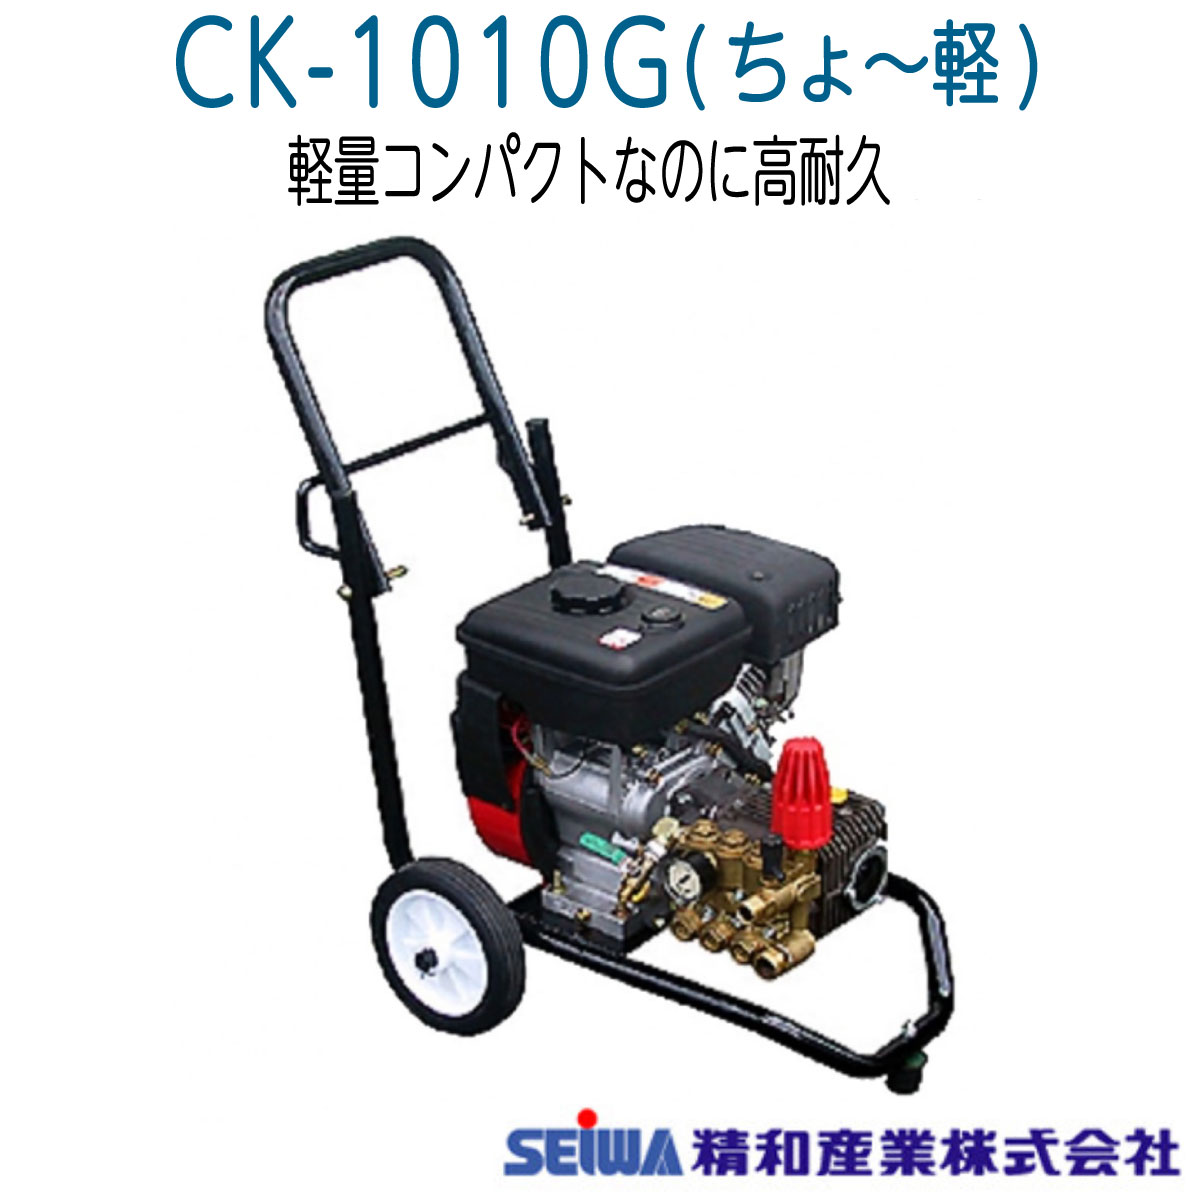 高圧洗浄機ちょ〜軽 CK-1010G 精和産業 セイワ